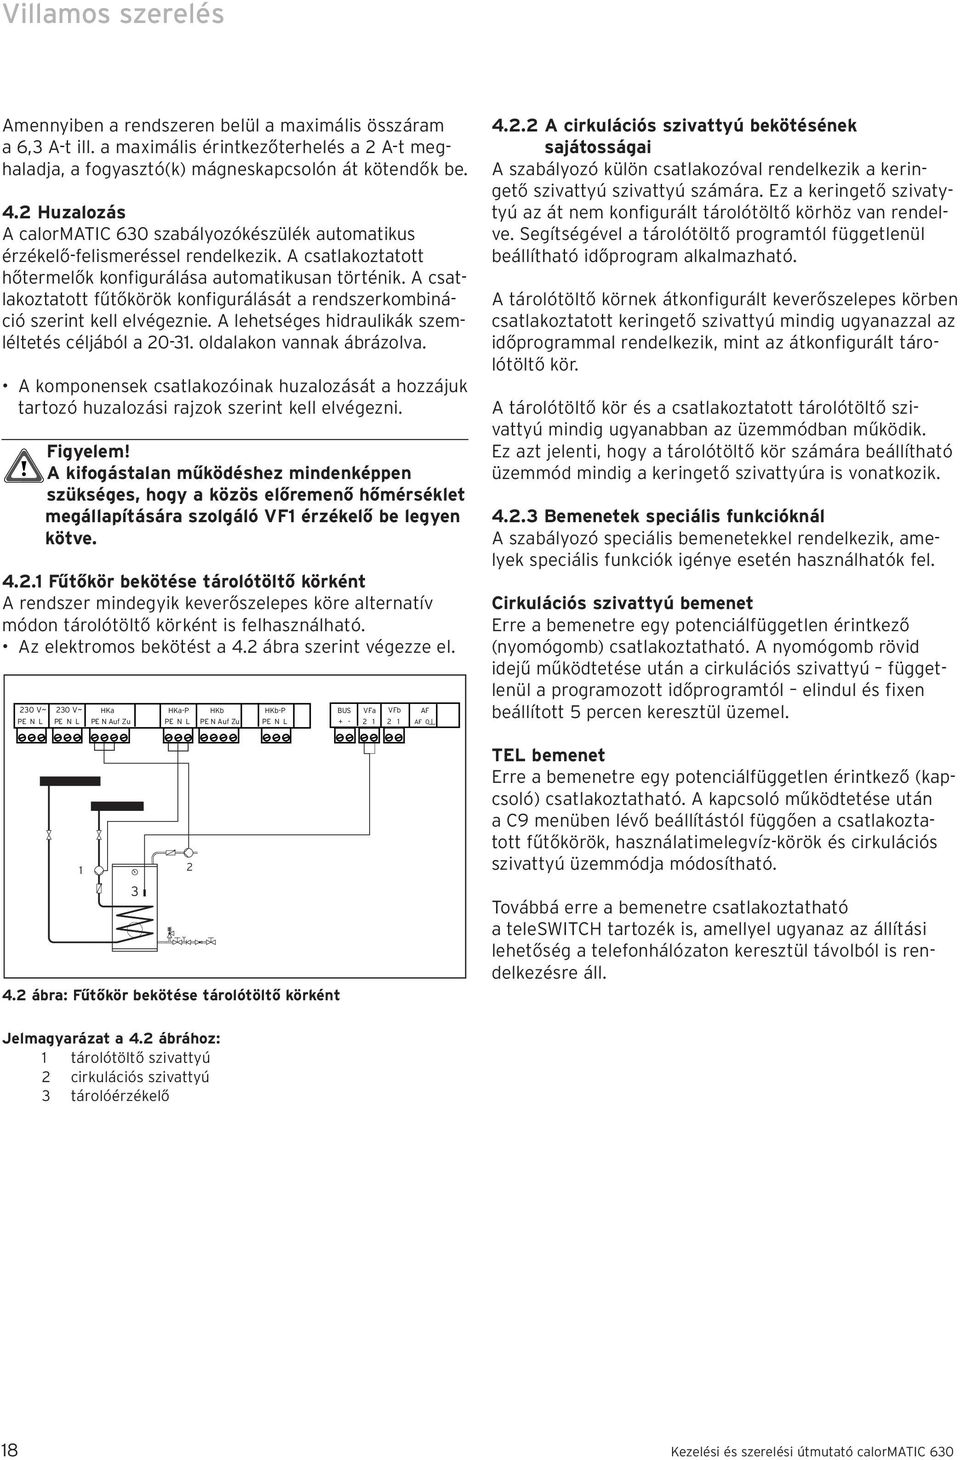 A csatlakoztatott fűtőkörök konfigurálását a rendszerkombináció szerint kell elvégeznie. A lehetséges hidraulikák szemléltetés céljából a 20-31. oldalakon vannak ábrázolva.